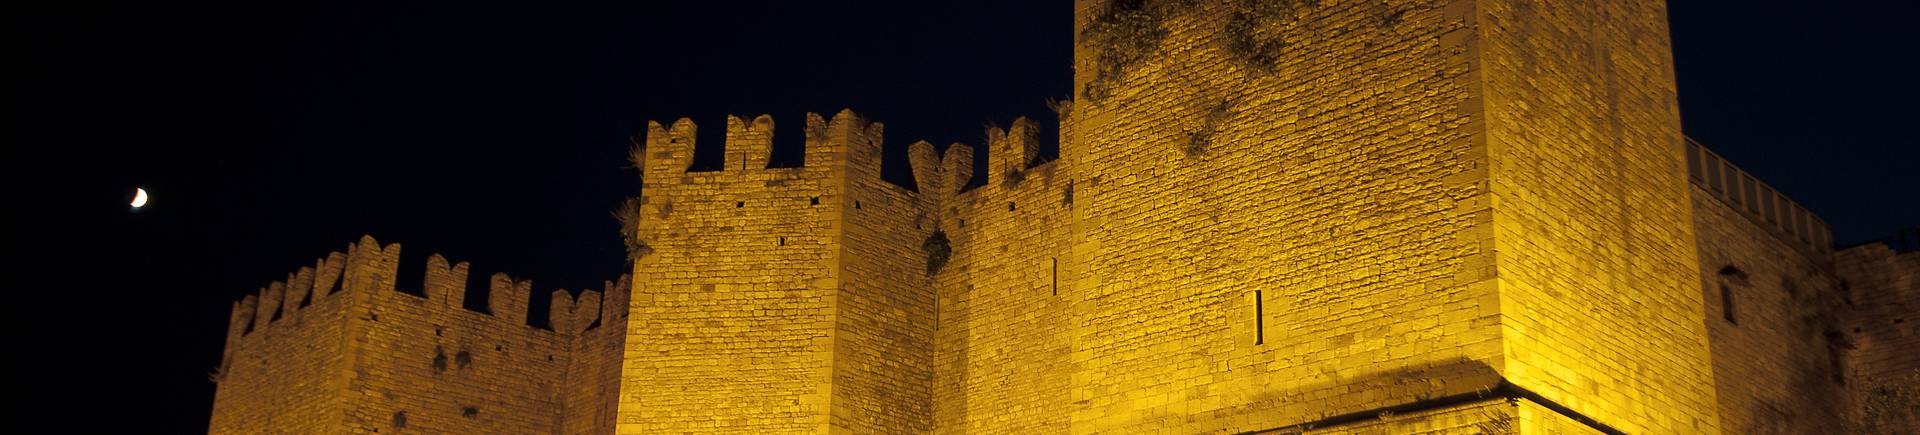 Castello dell'Imperatore di notte